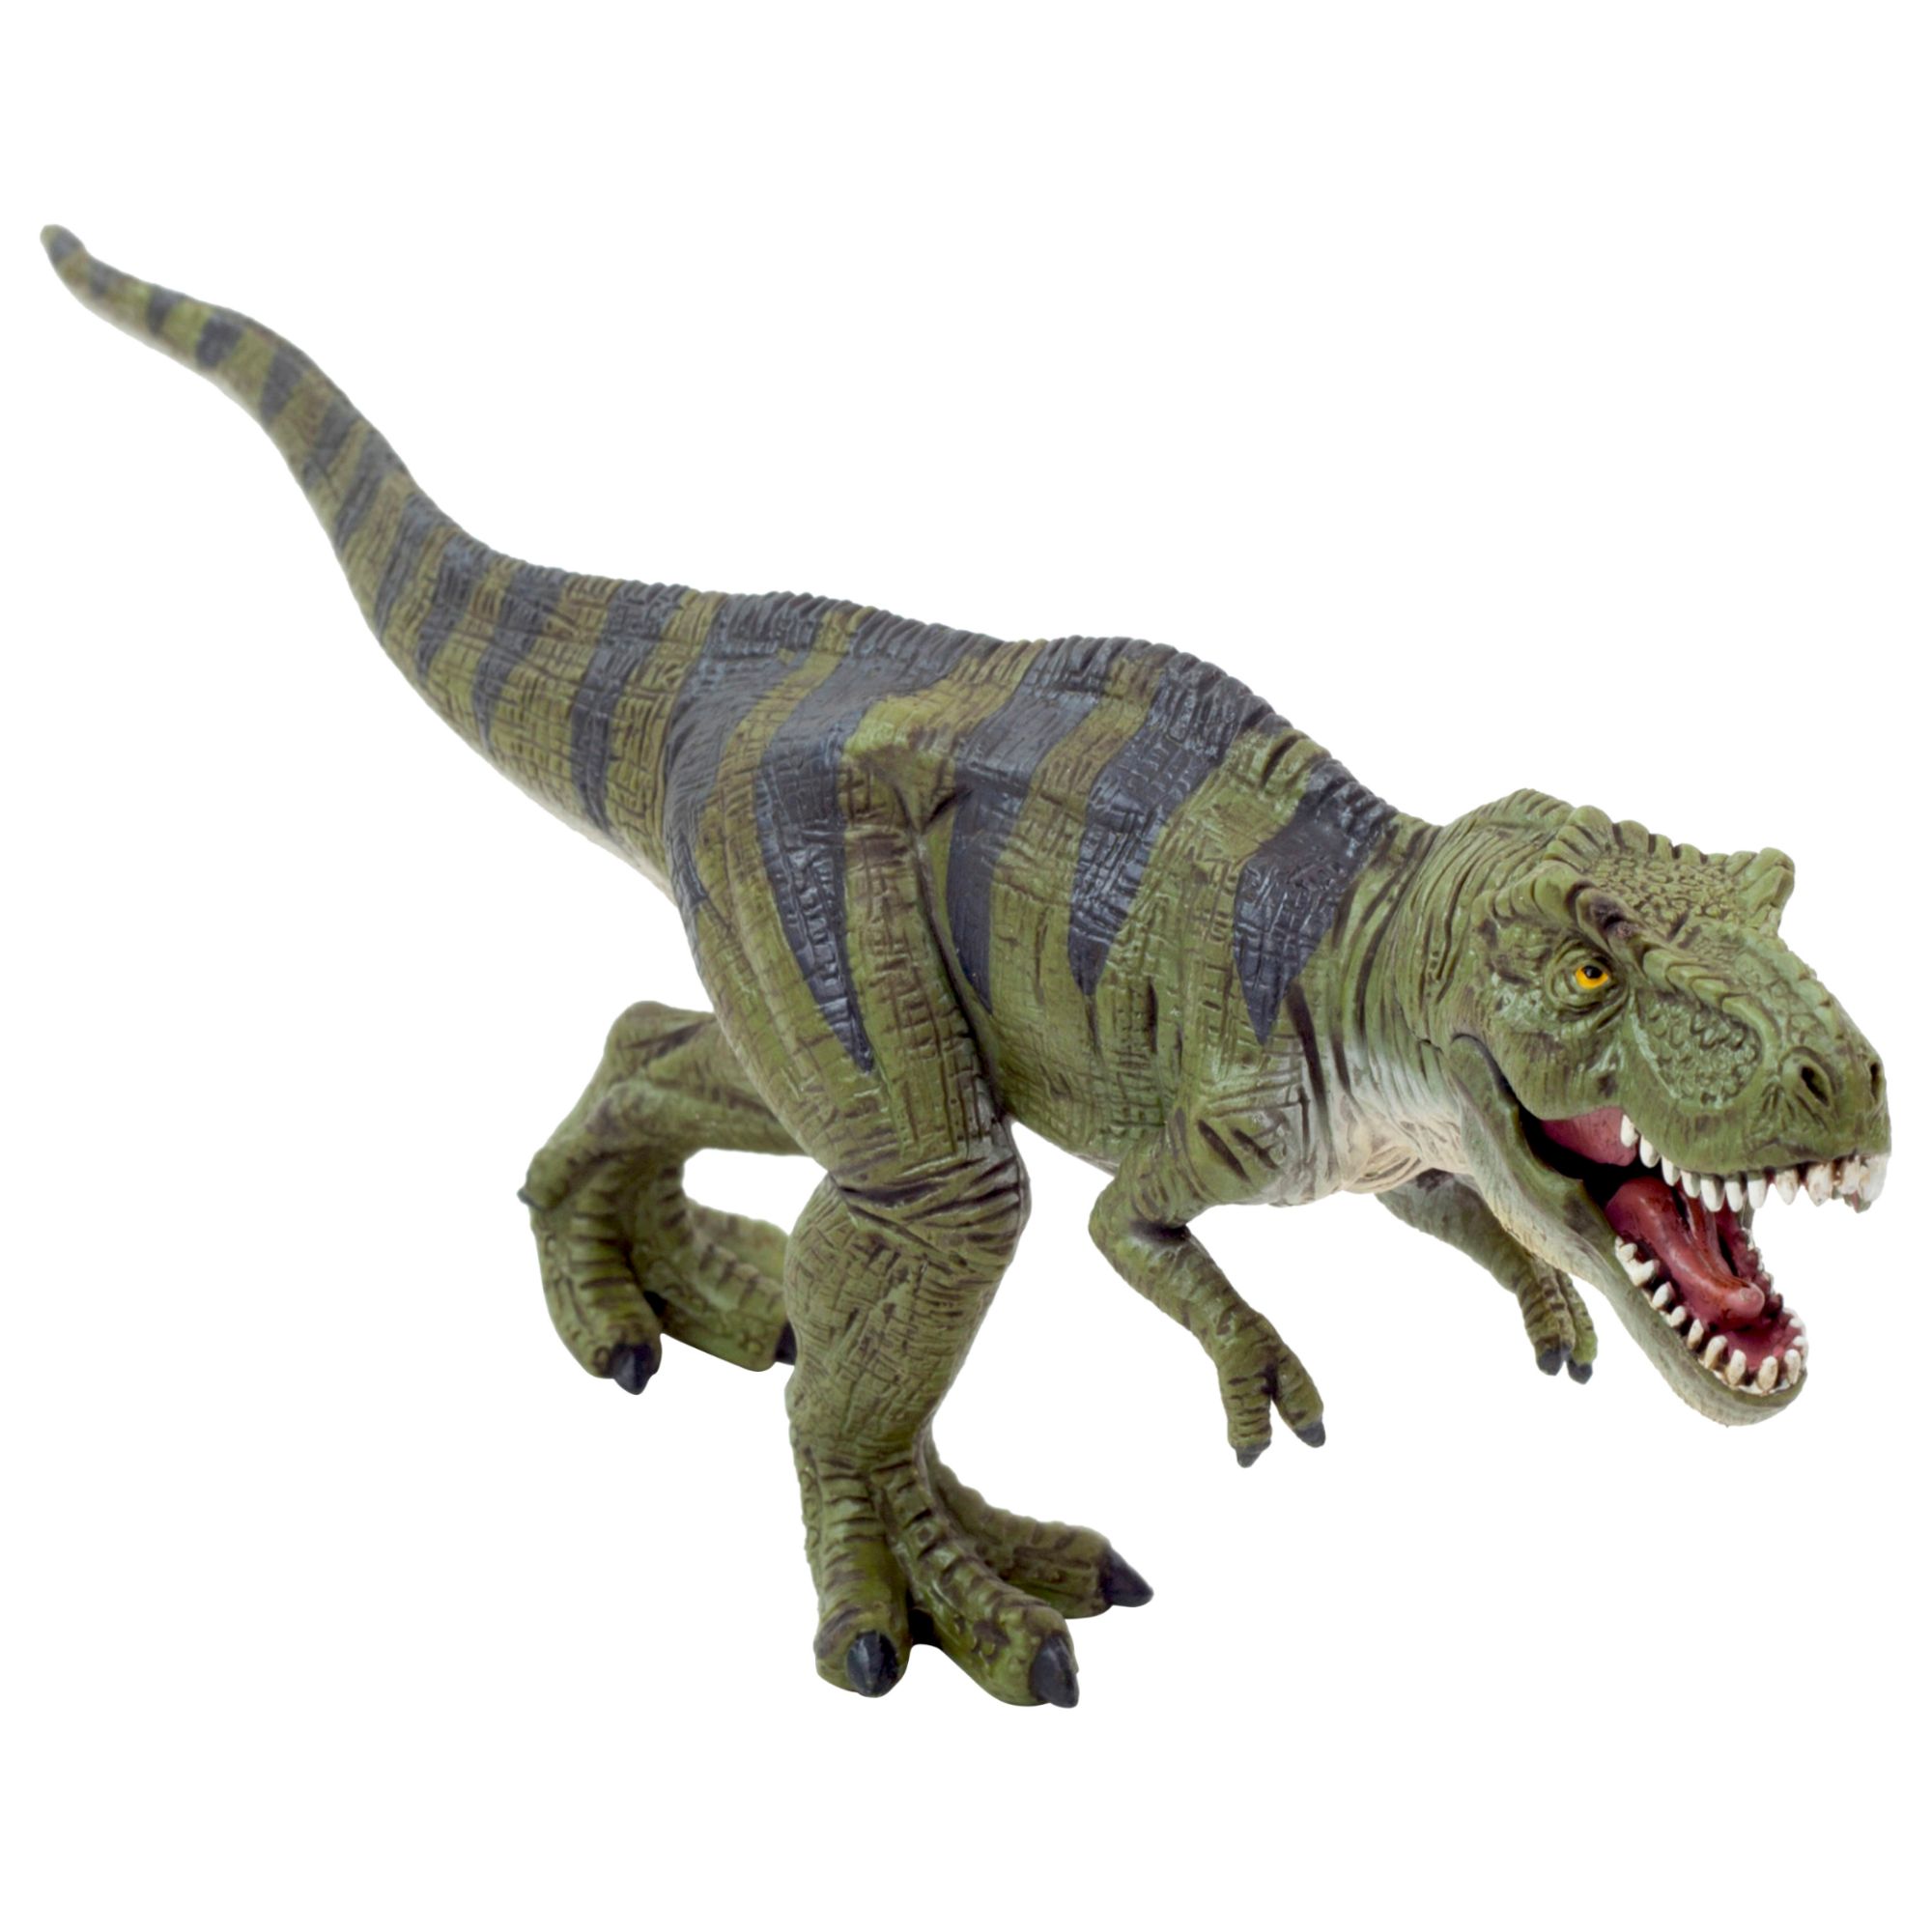 jouet tyrannosaure